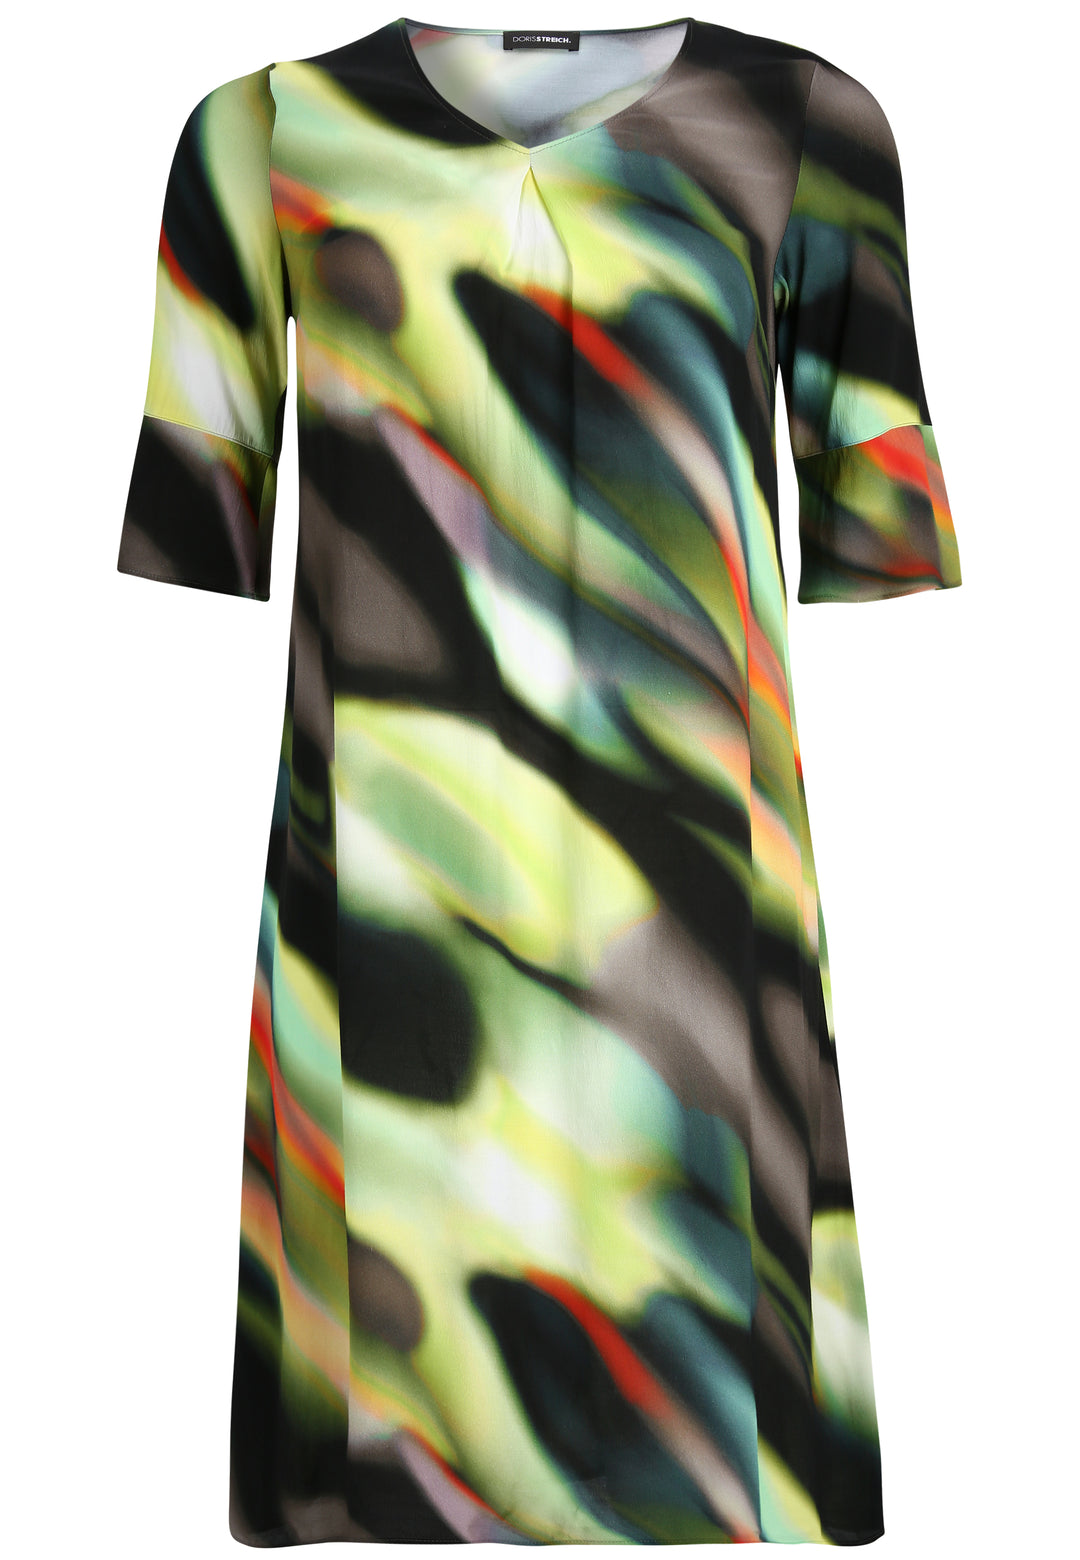 kleurig degradé jurk - doris streich - 637676 - grote maten - dameskleding - kledingwinkel - herent - leuven